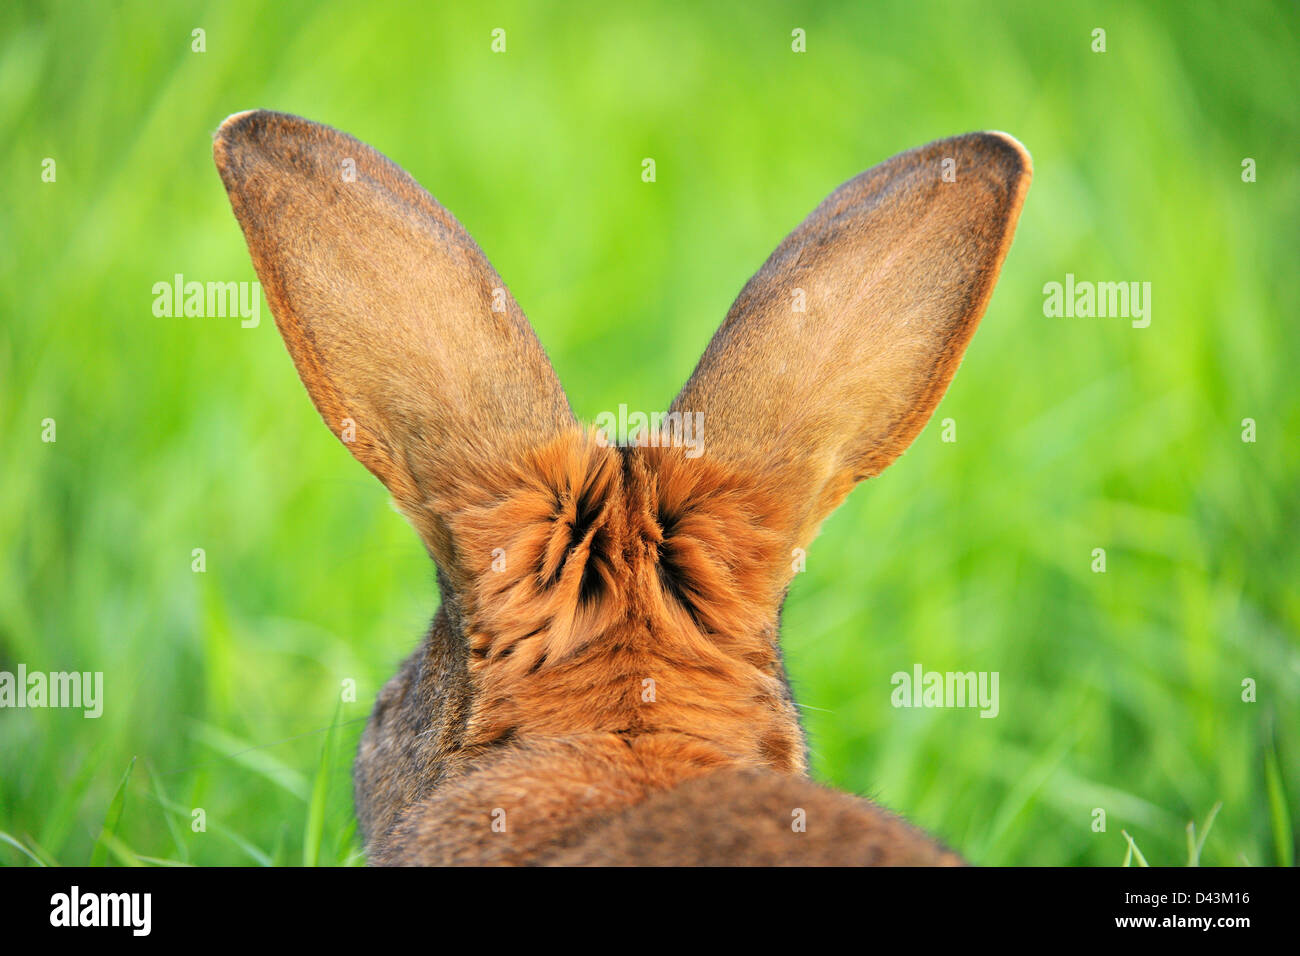 Hare, Bavaria, Germany Stock Photo